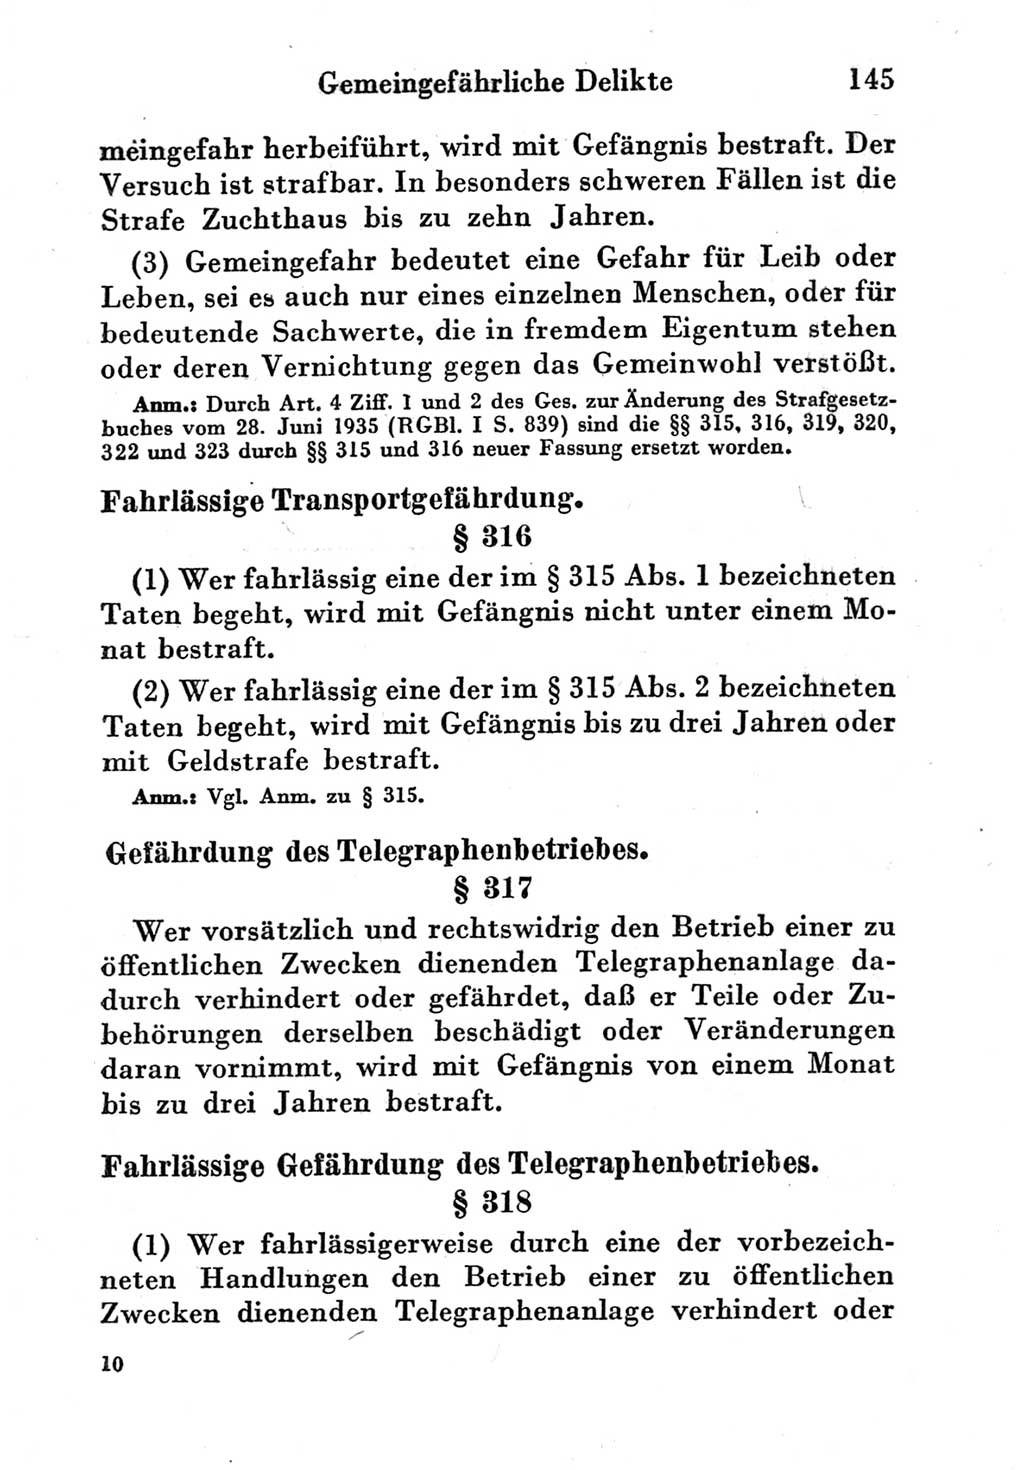 Strafgesetzbuch (StGB) und andere Strafgesetze [Deutsche Demokratische Republik (DDR)] 1951, Seite 145 (StGB Strafges. DDR 1951, S. 145)